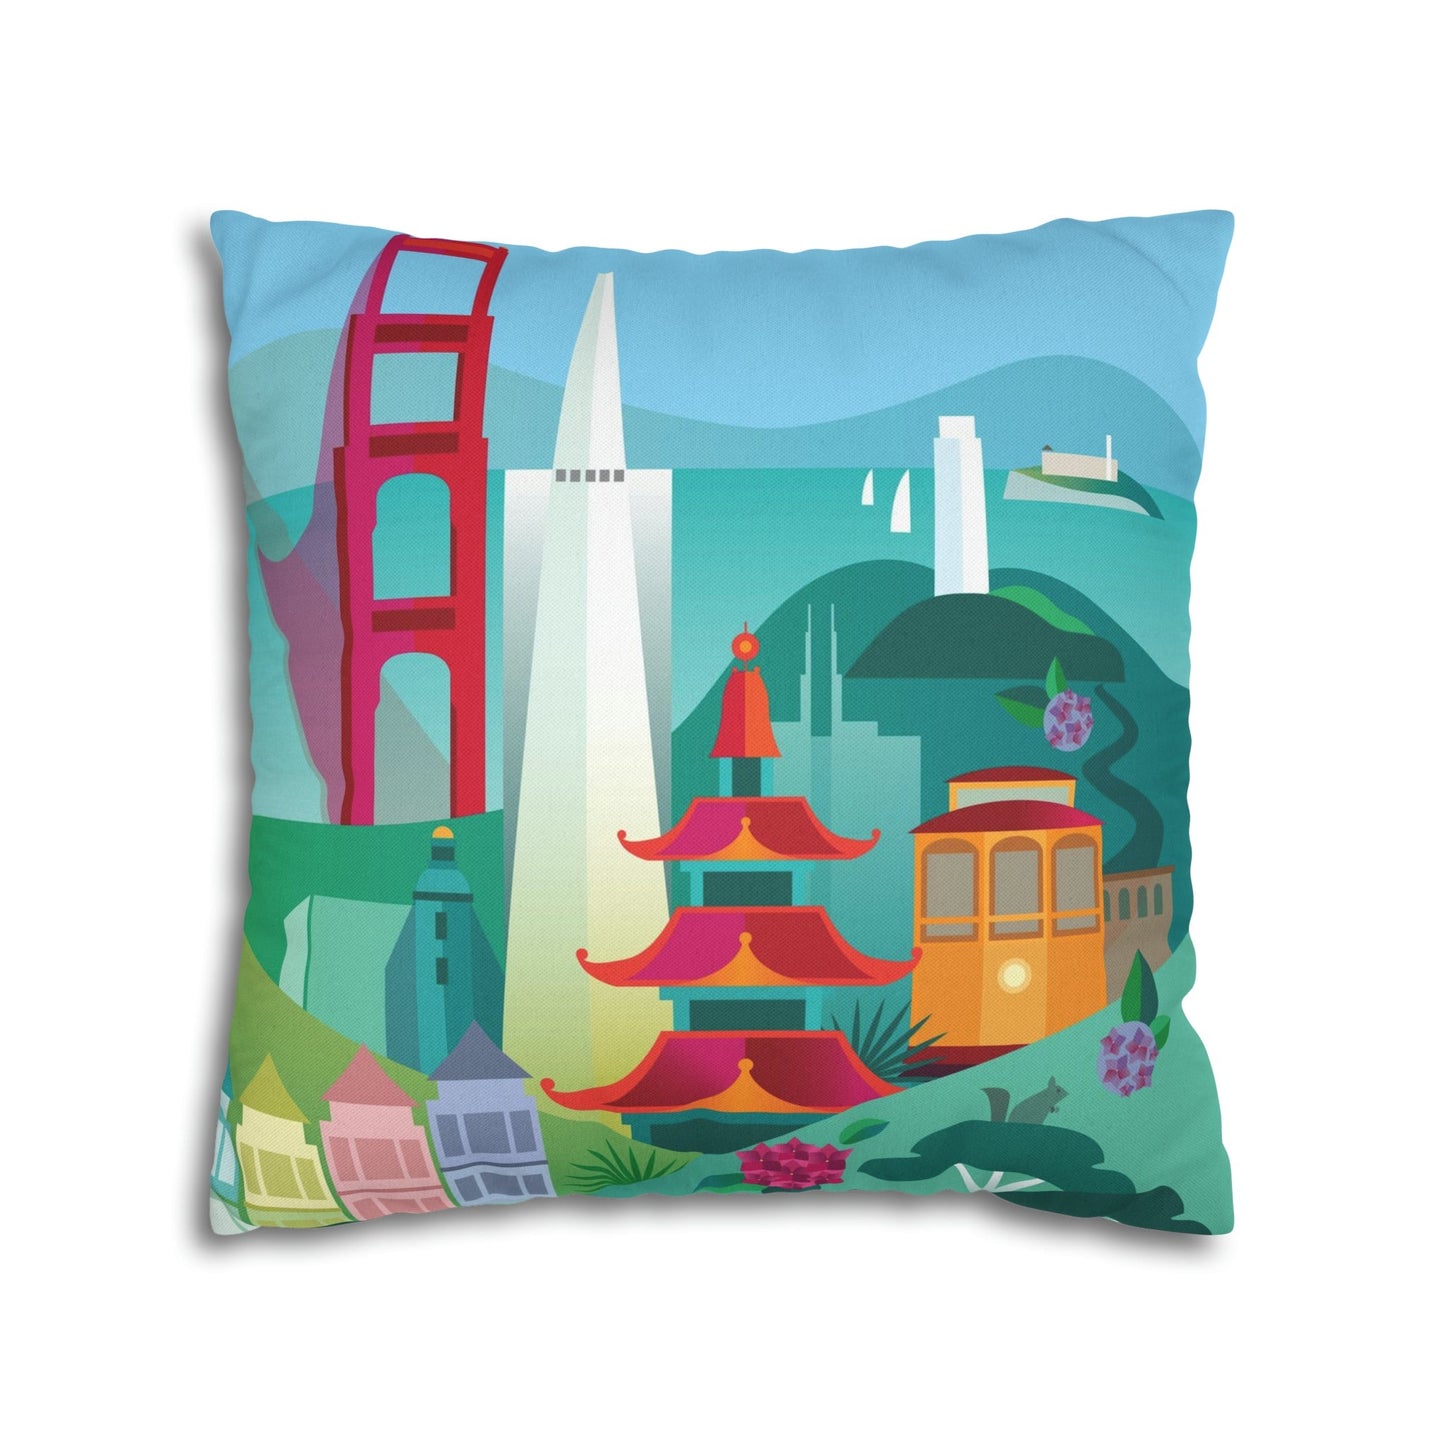 San Francisco Cushion Cover